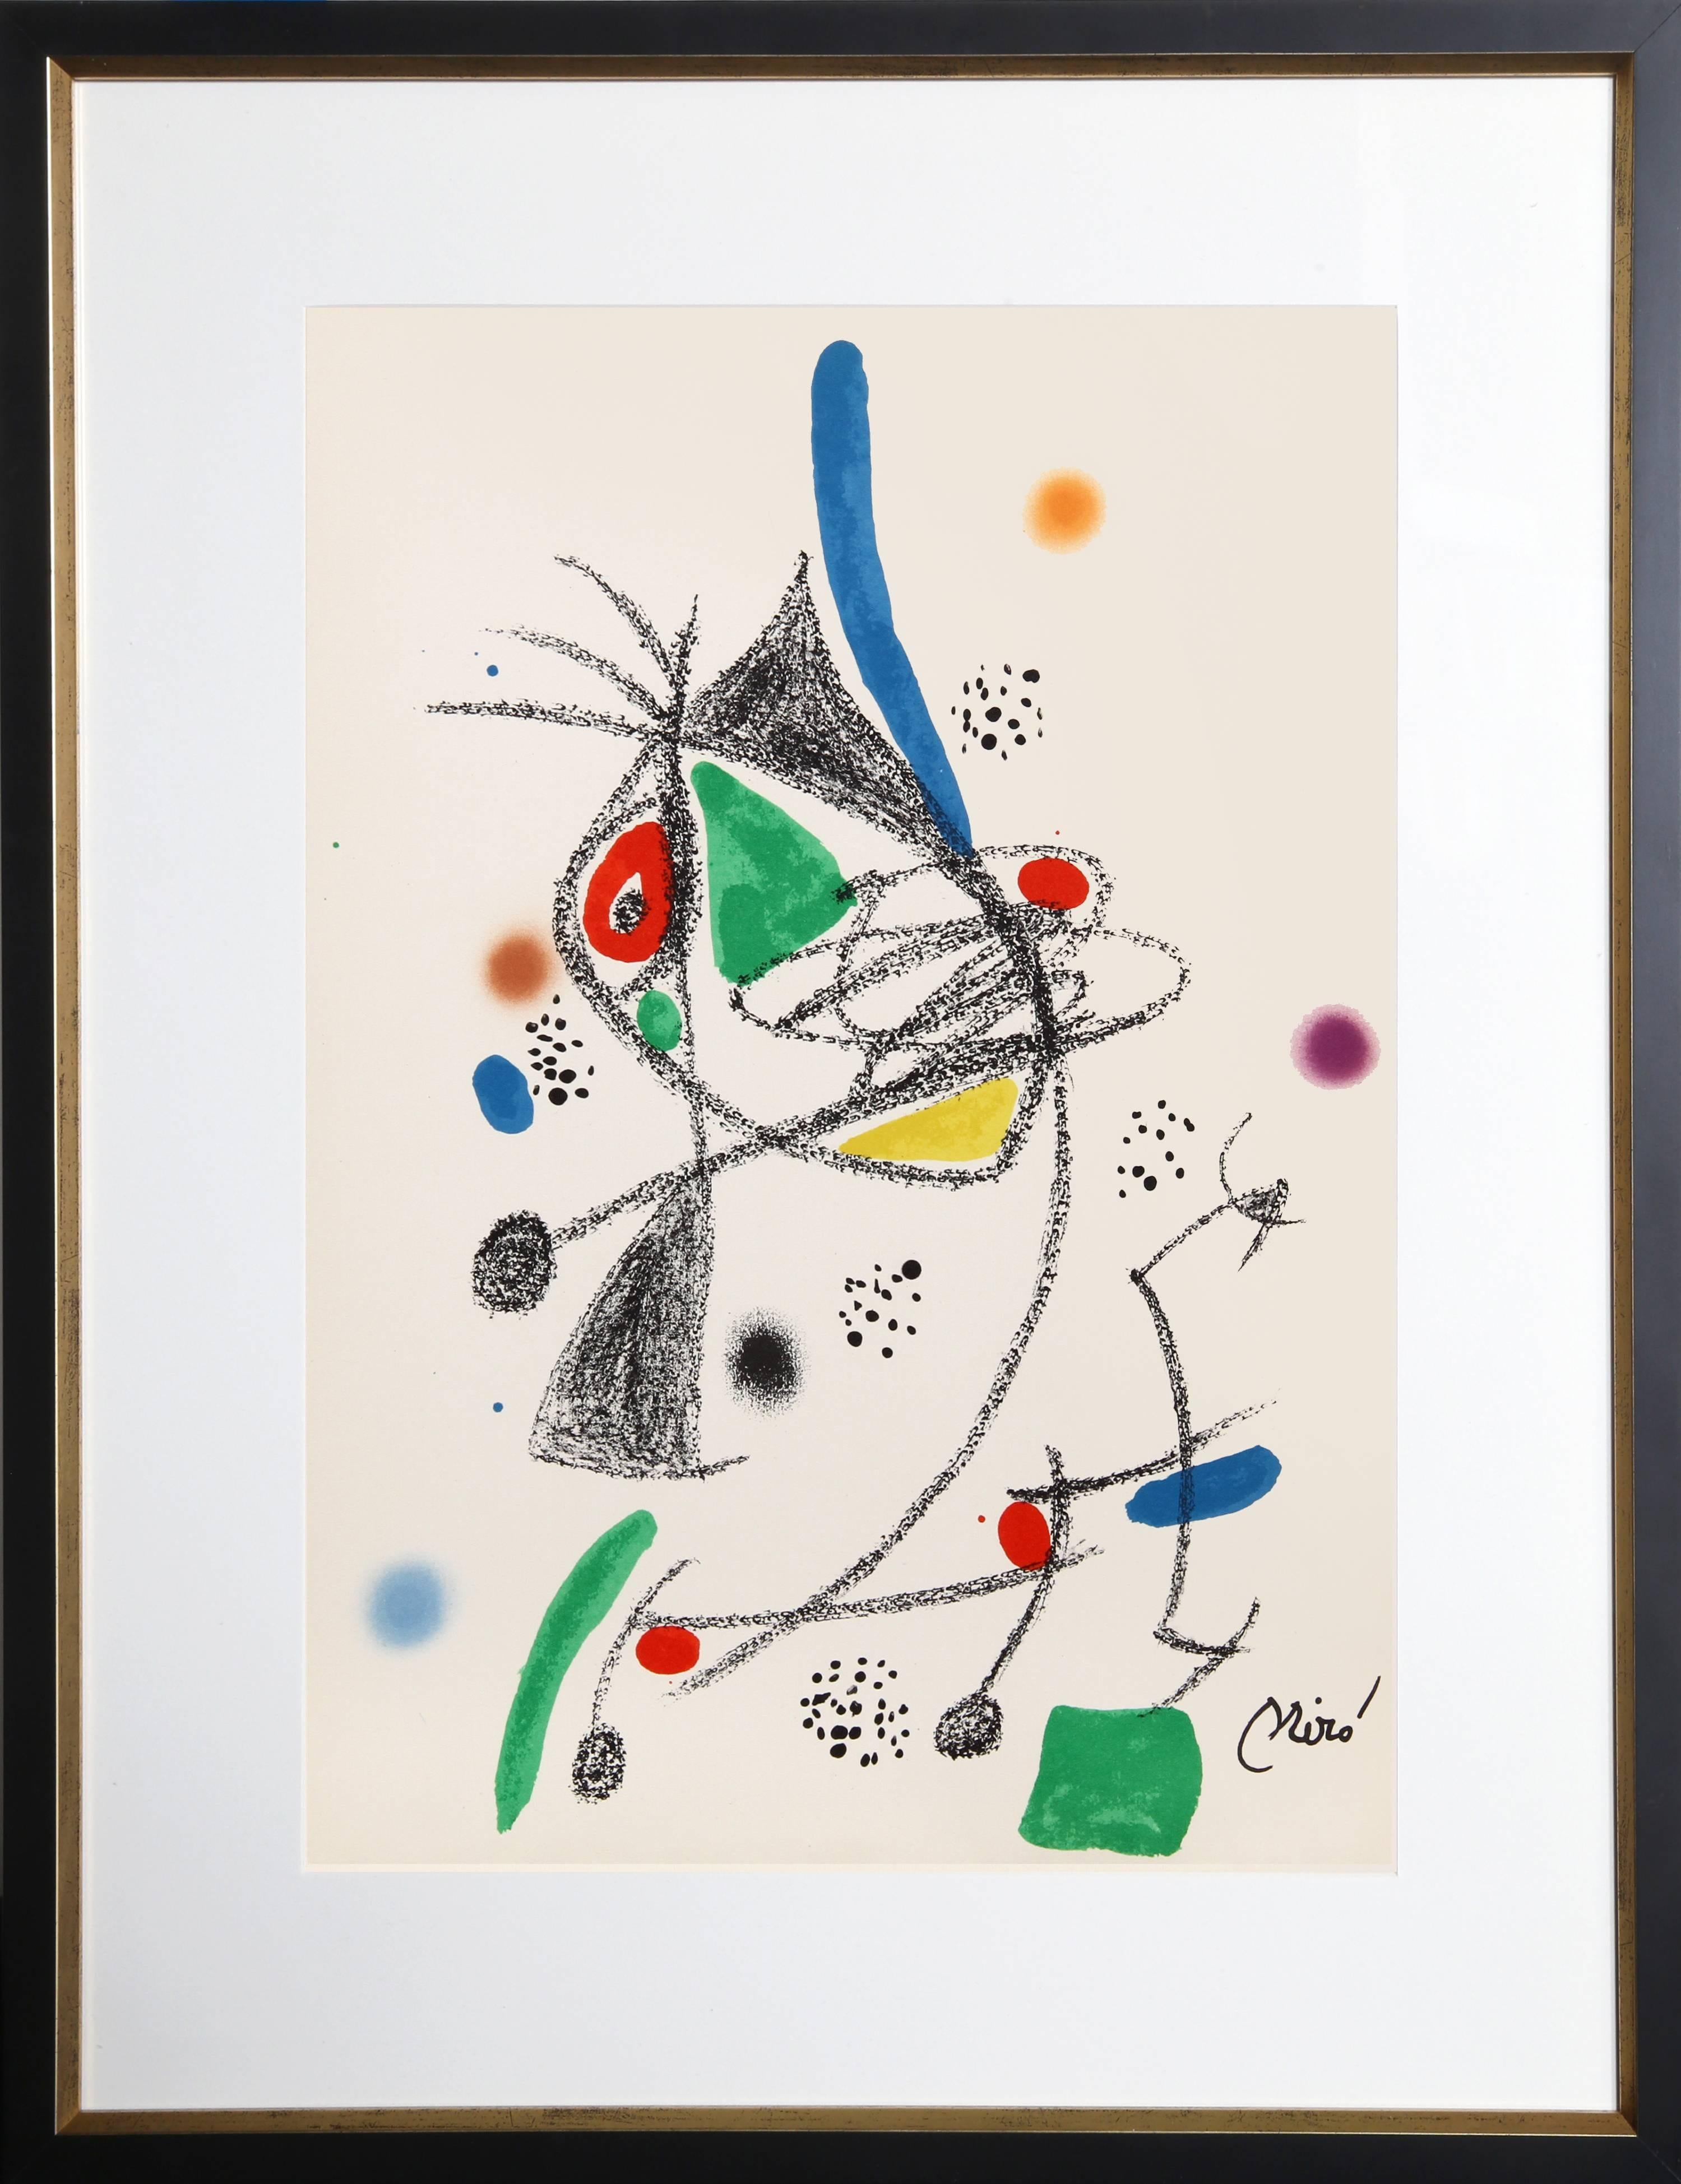 Joan Miró Abstract Print - Maravillas con Variaciones Acrosticas en el Jardin de Miro (Number 6)